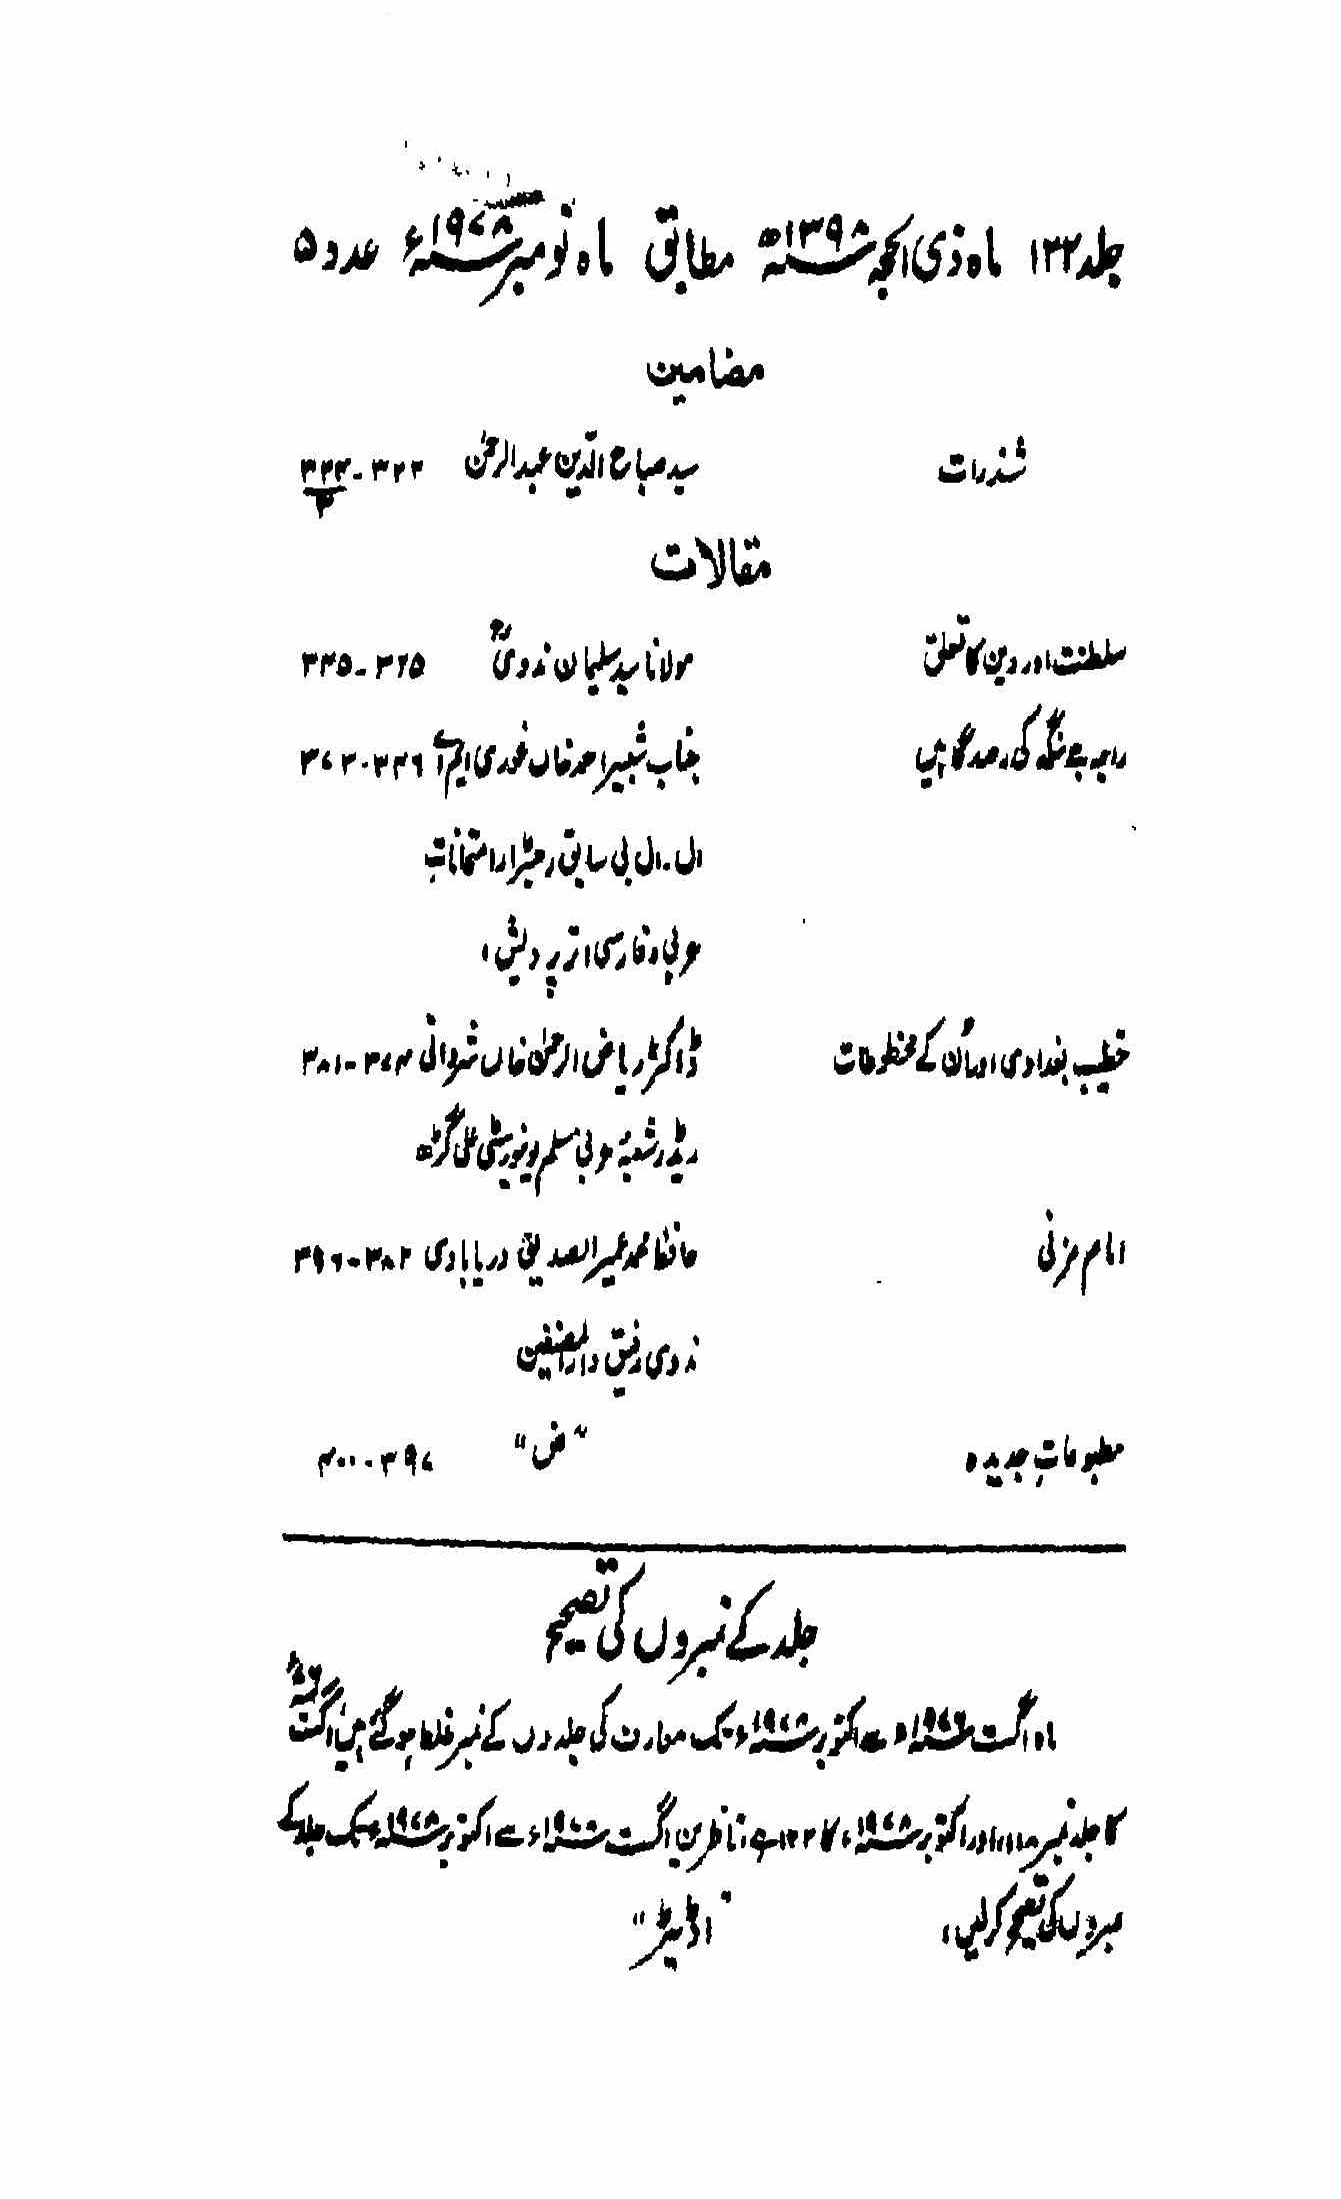 Maarif, Azamgarh